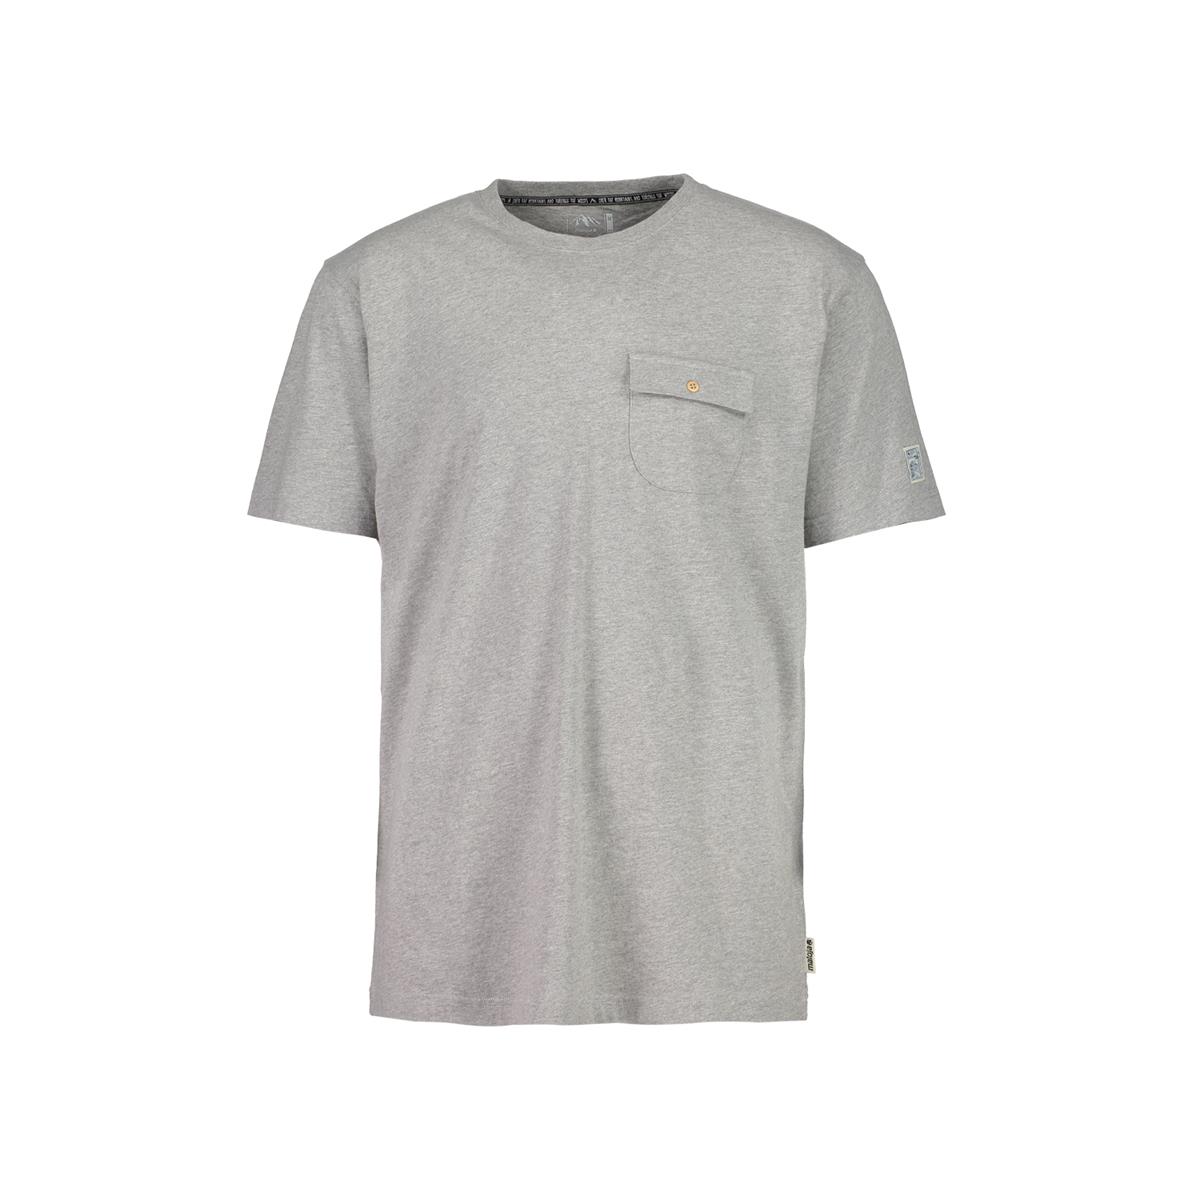 Maloja T-Shirt GisepM. Grau Melange